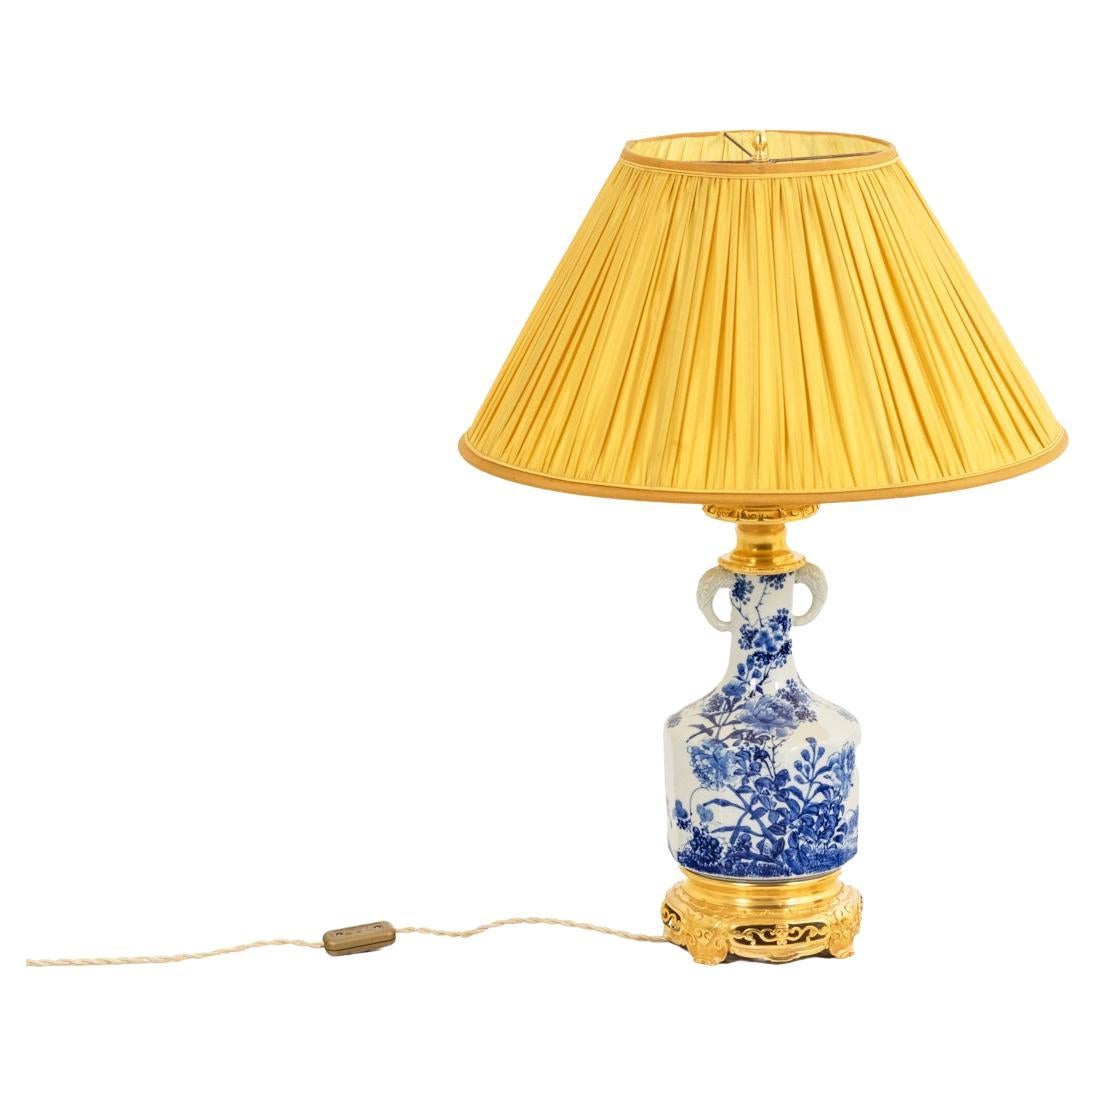 Lampe aus japanischem Porzellan und vergoldeter Bronze, um 1880